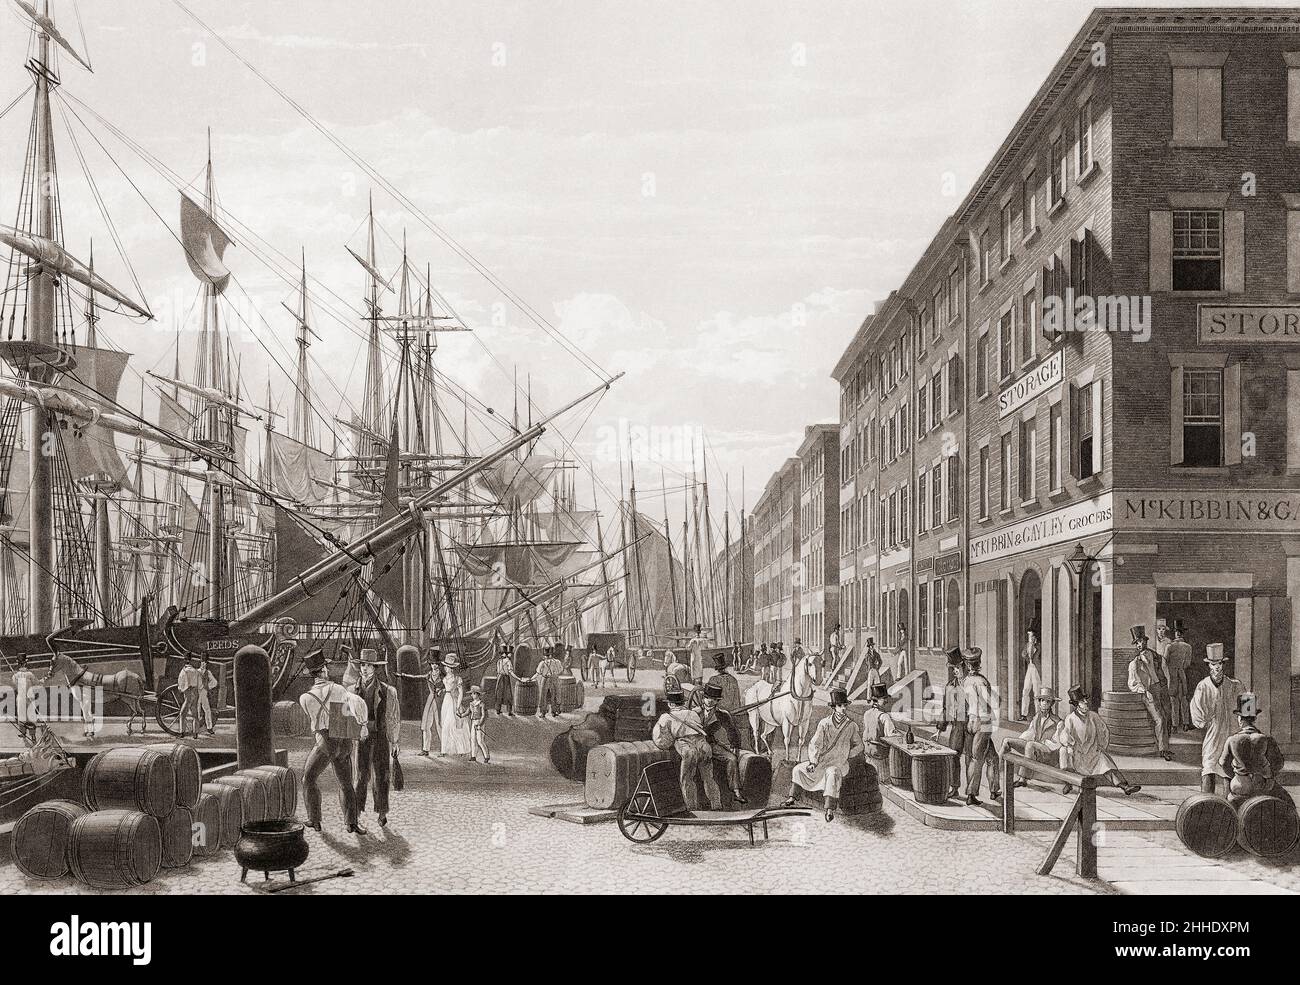 South Street von der Maiden Lane aus gesehen, New York, Vereinigte Staaten von Amerika. Nach einem Werk von William James Bennett aus dem frühen 19th. Jahrhundert. Stockfoto